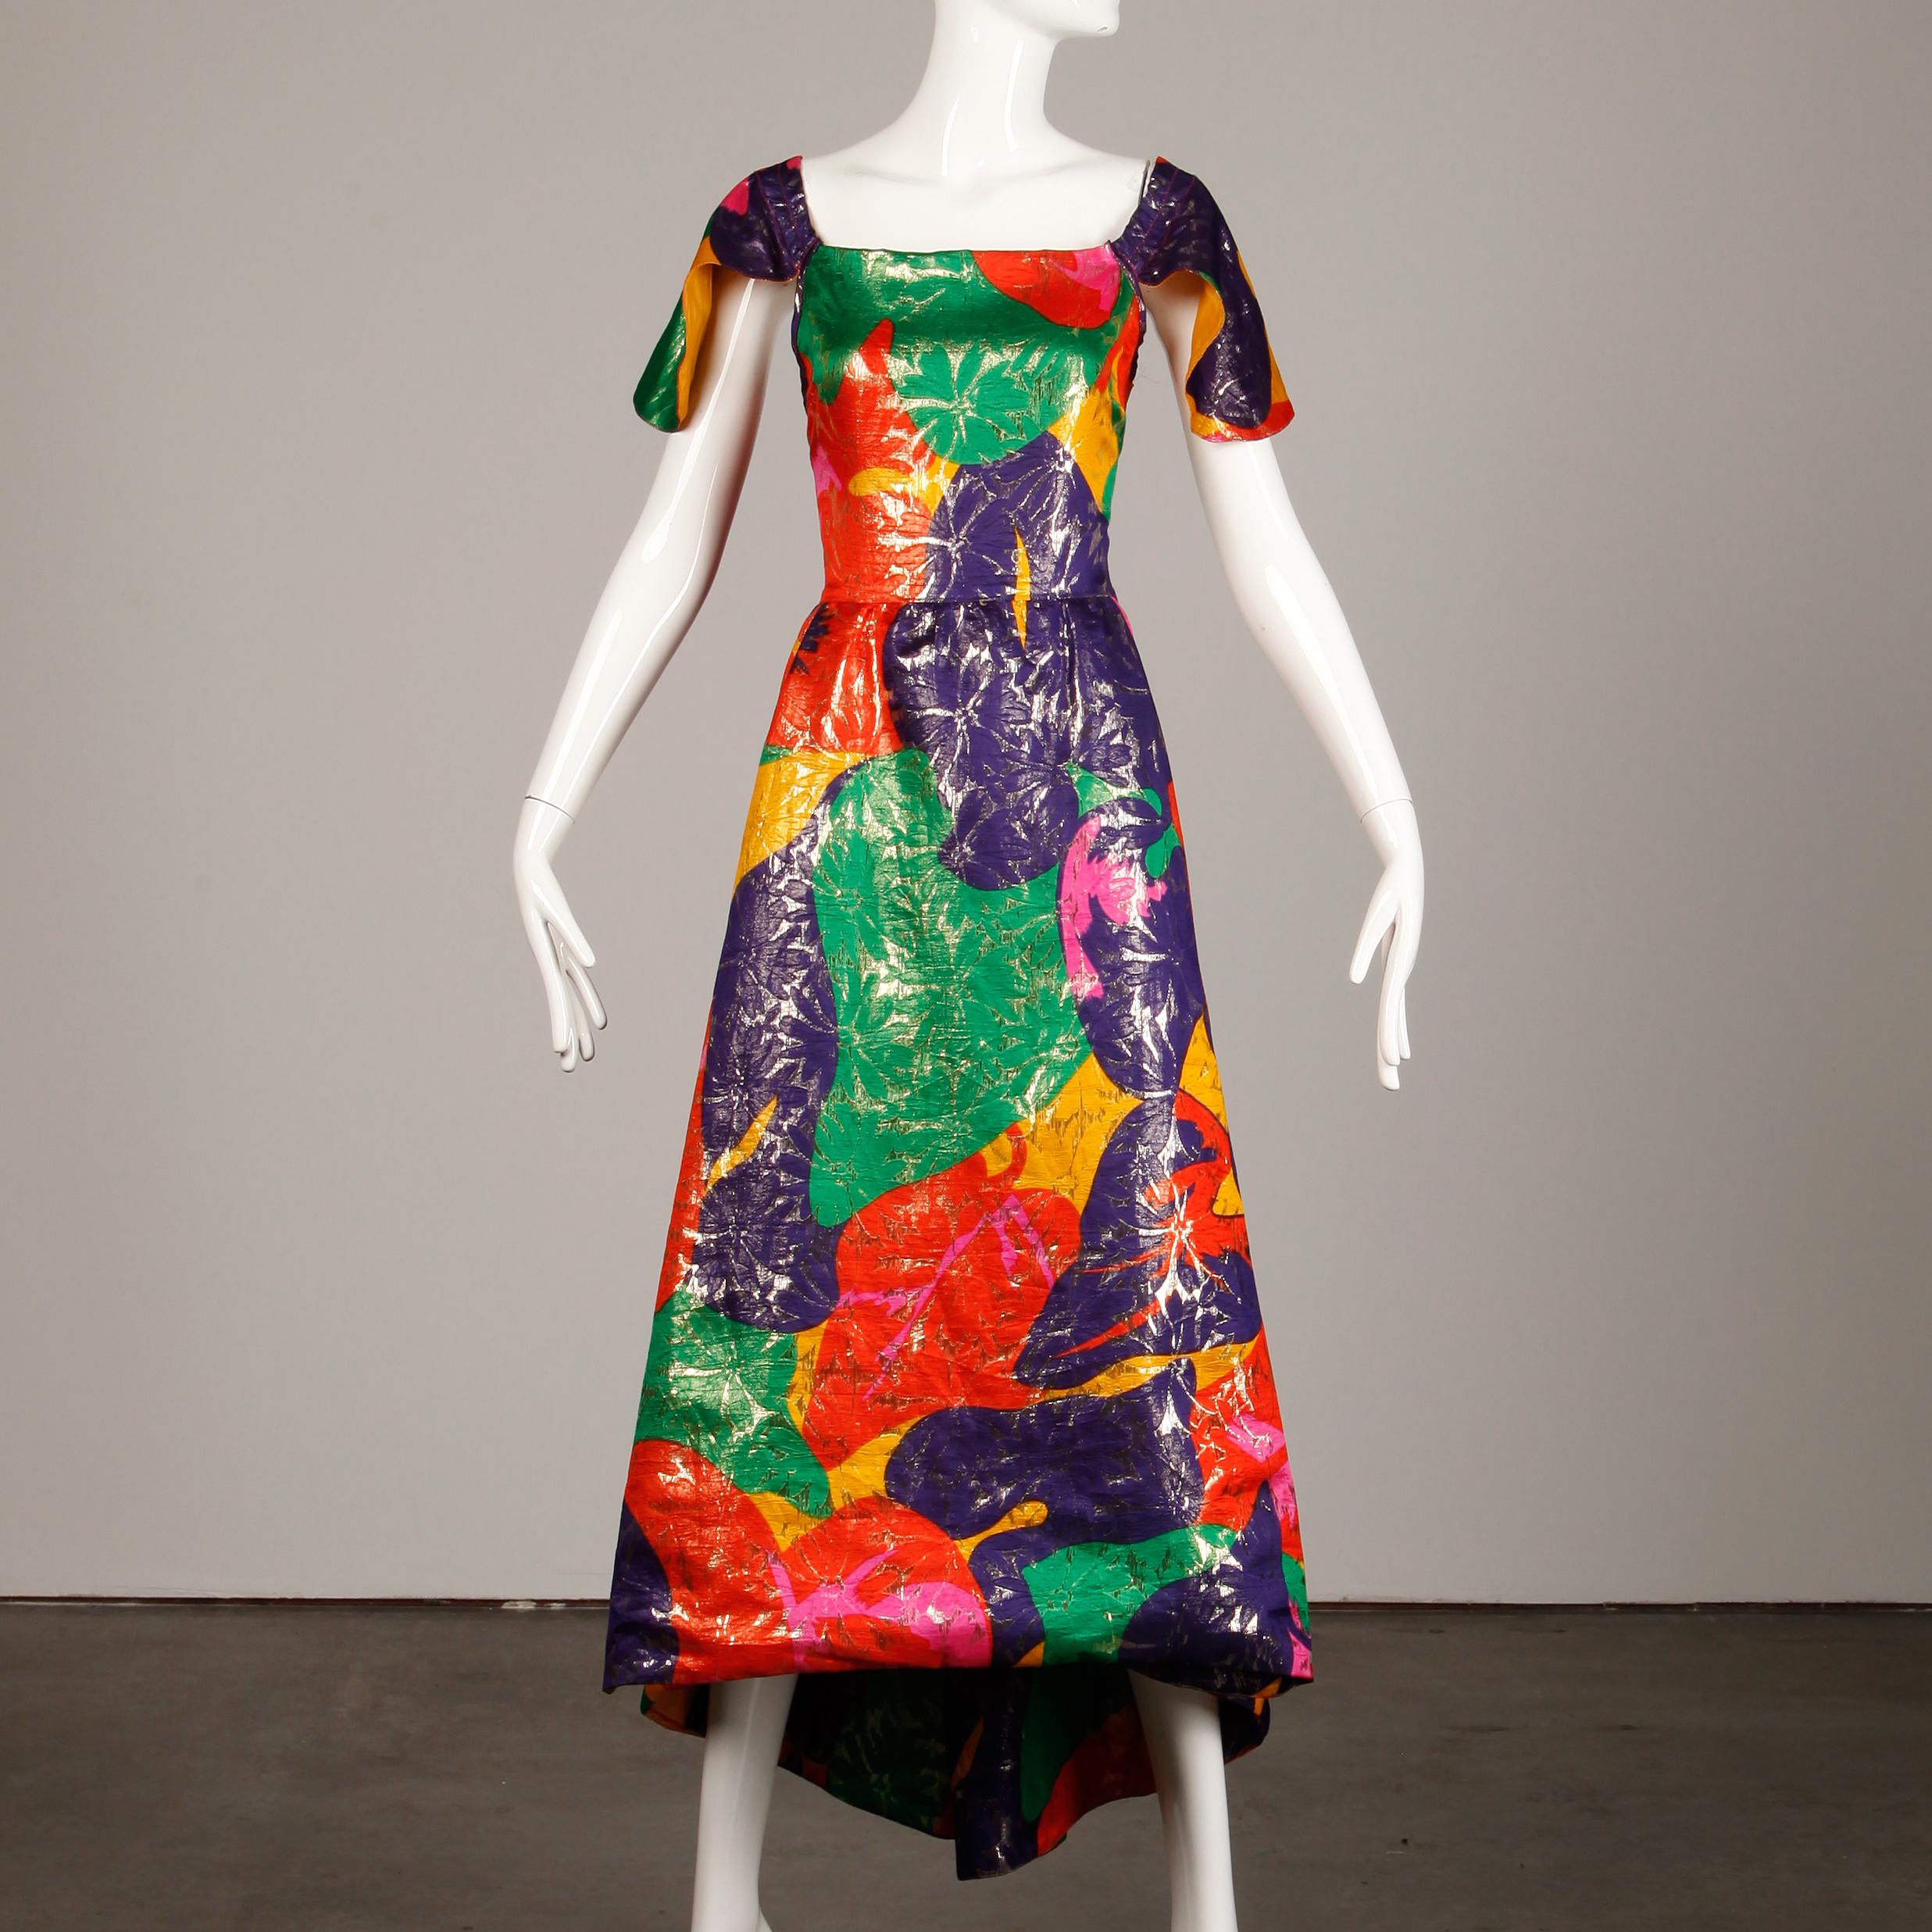 Incroyable robe vintage en tissu métallisé d'Arnold Scaasi avec un ourlet haut et bas et un dos ouvert avec des chaînes. Manches à rabat en forme de pétales et tissu de soie coloré imprimé floral d'inspiration tropicale. Entièrement doublé, il se